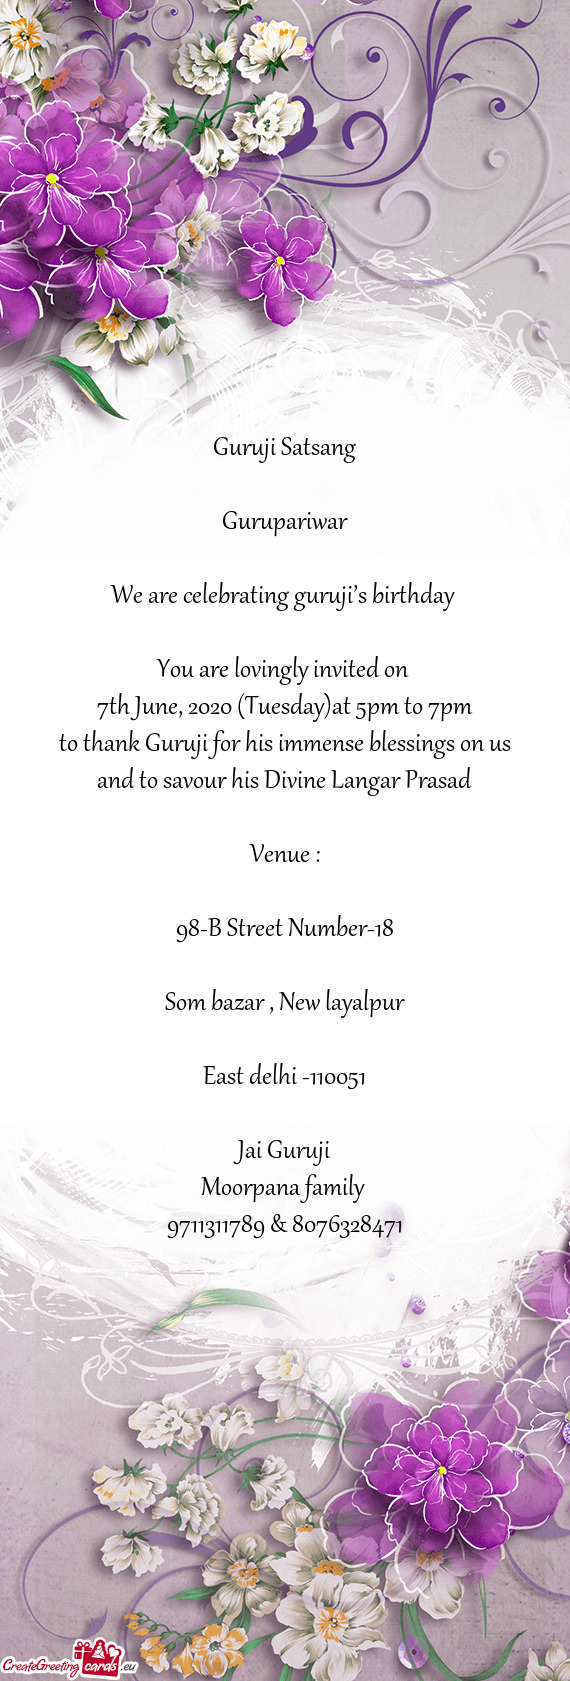 We are celebrating guruji’s birthday